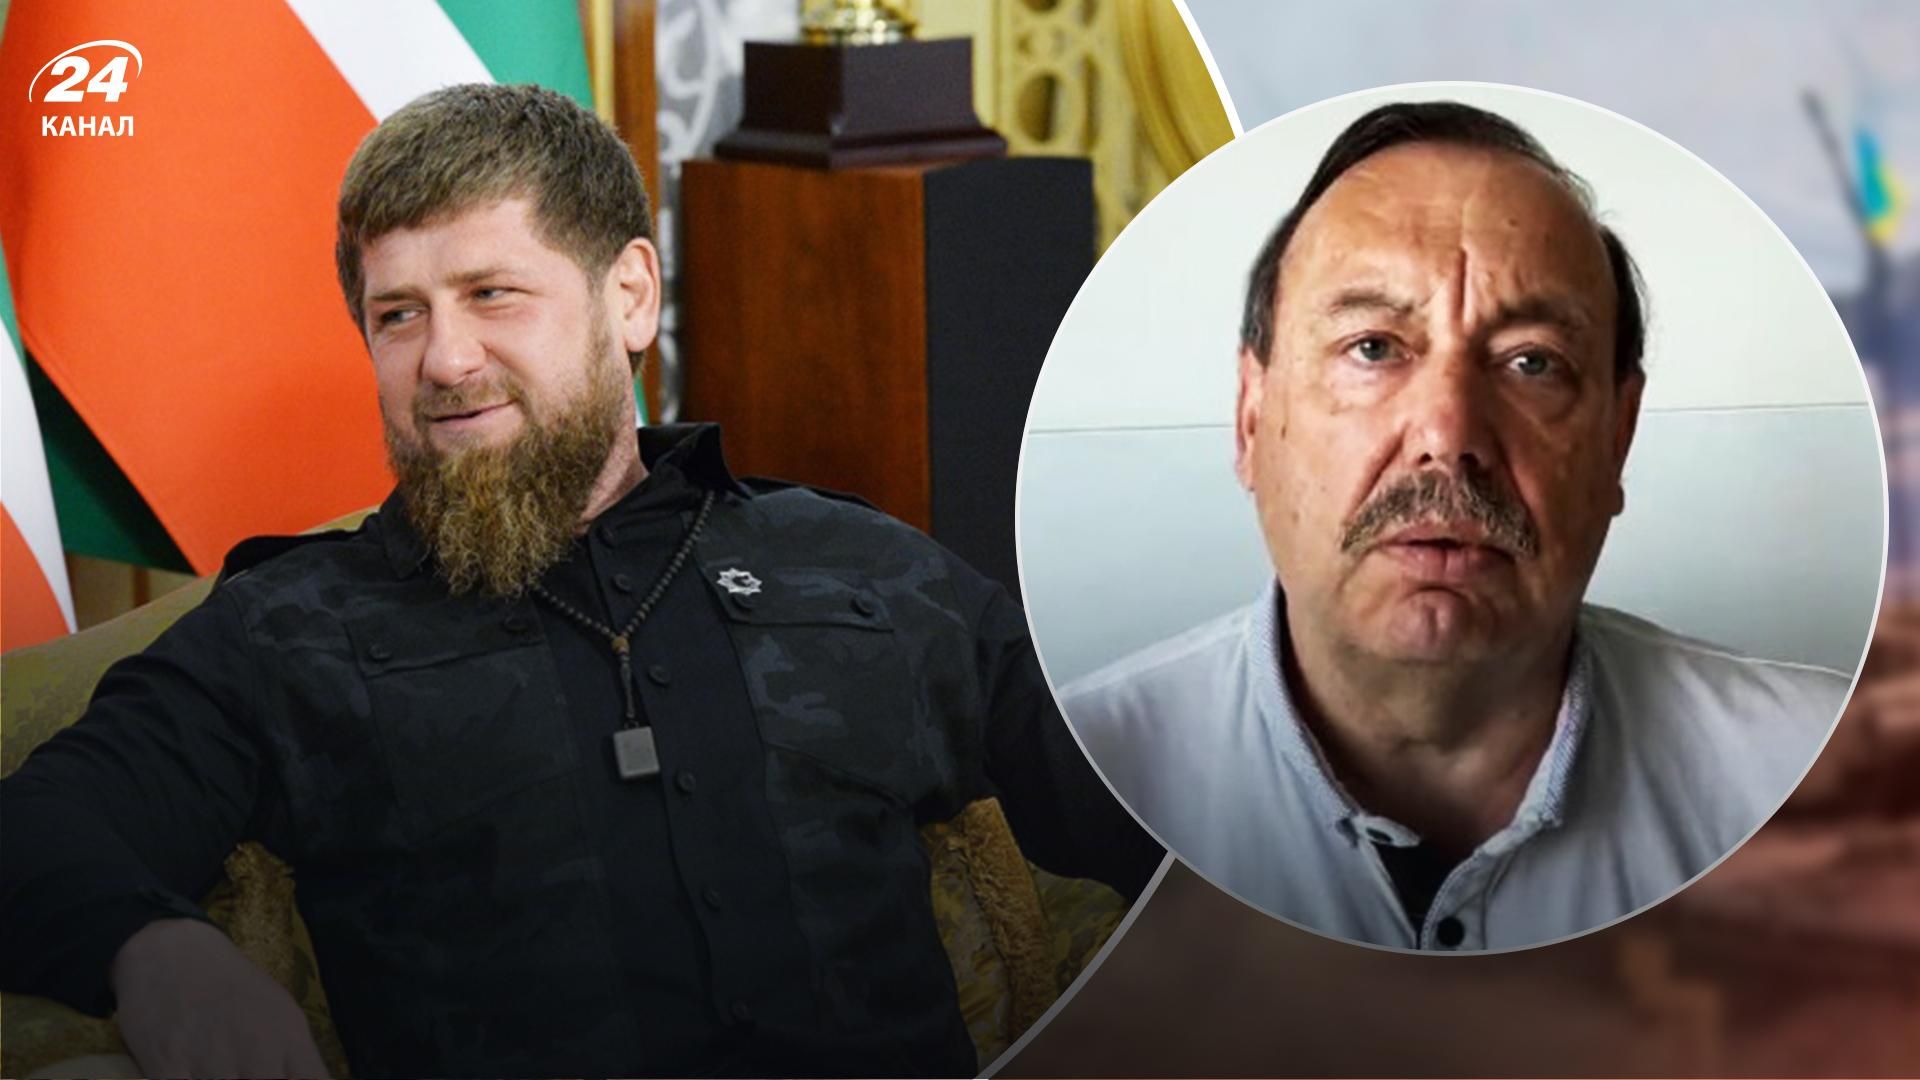 Кадыров мечтает быть королем Кавказа – Гудков - 24 Канал